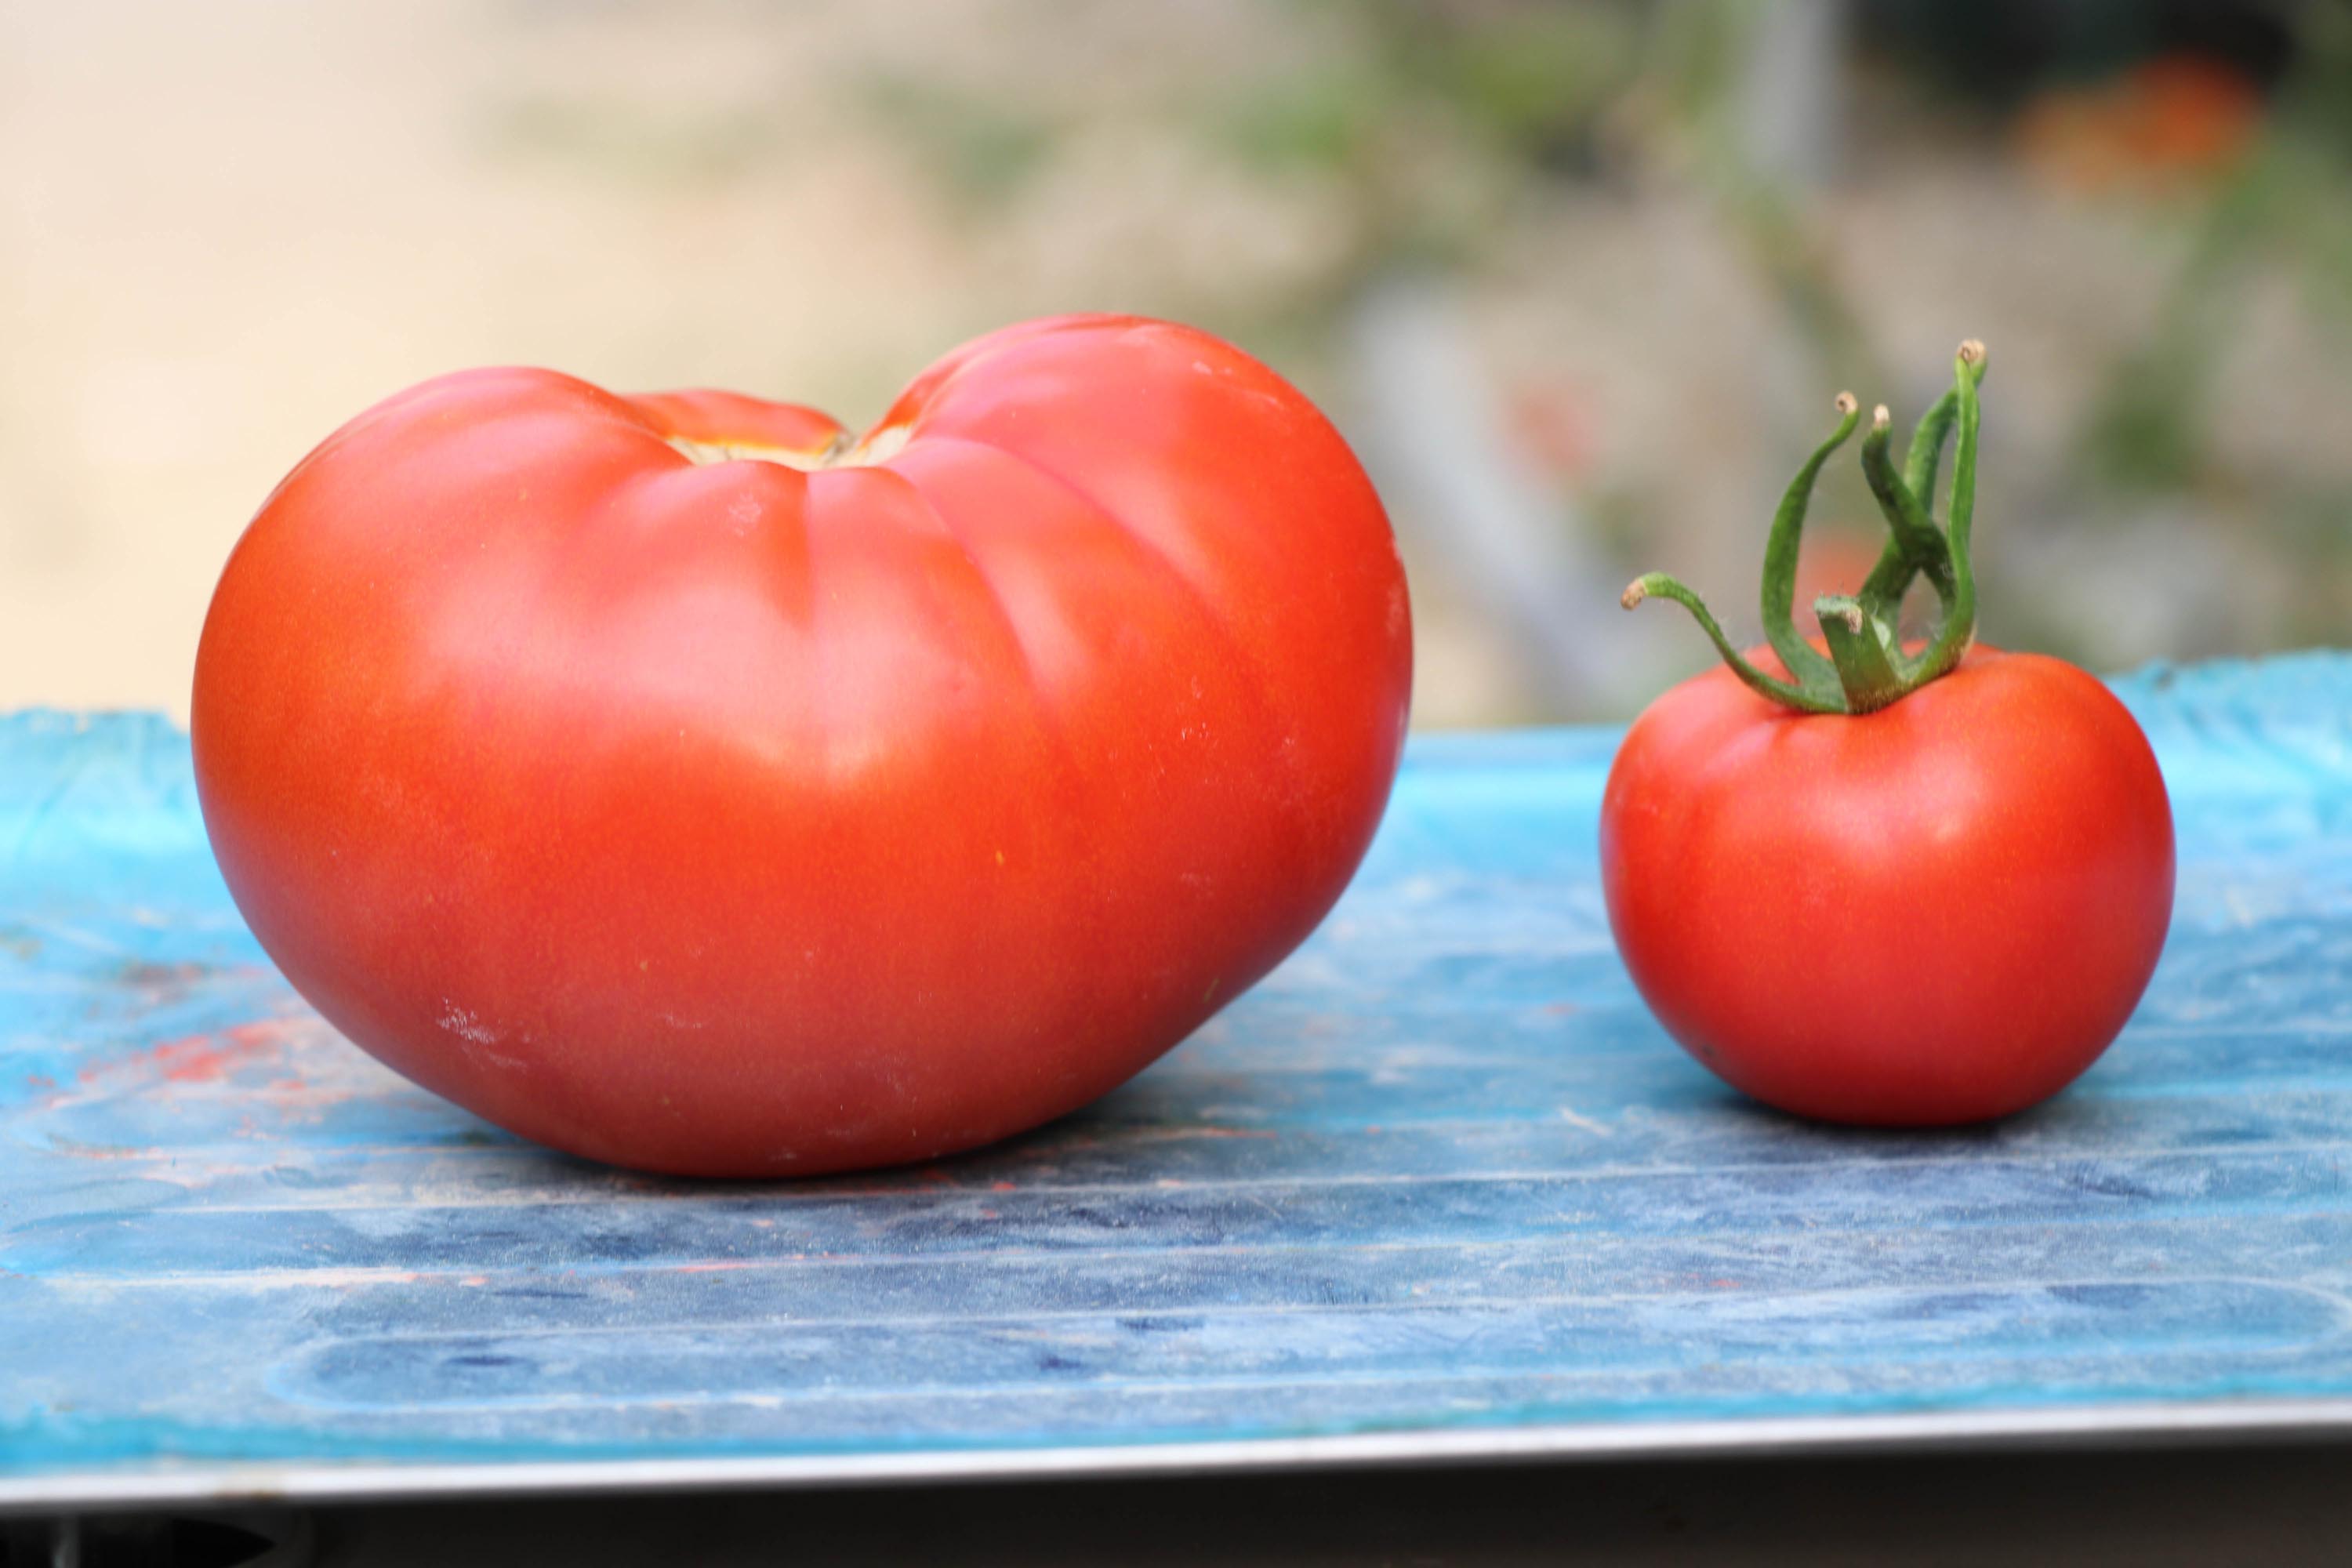 bombus-arilari-kullanilarak-yetistirilen-domateslerin-tanesi-1-kilo-geliyor-4707-dhaphoto13.jpg